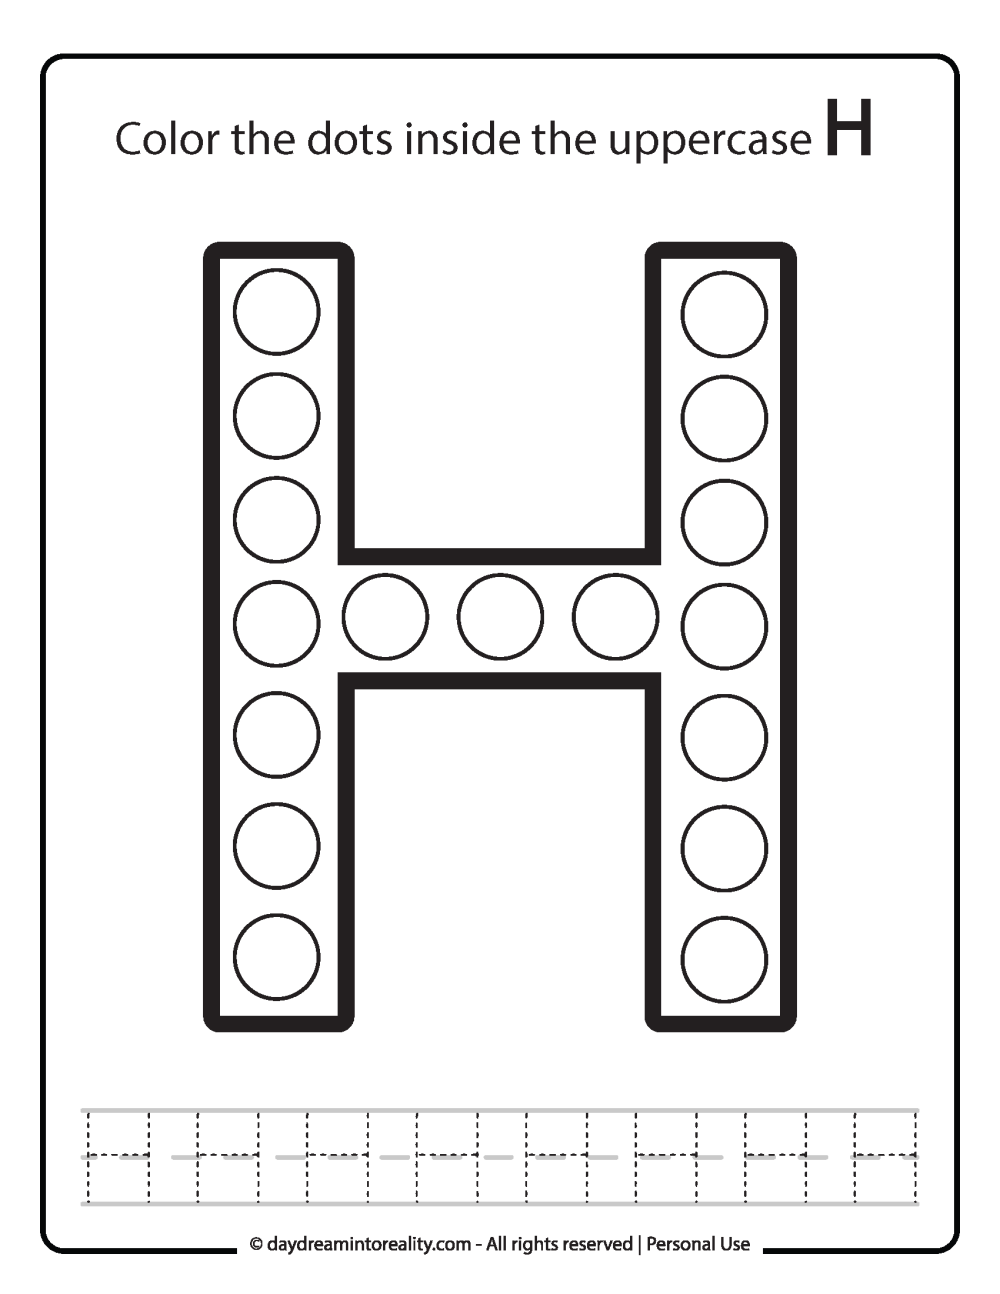 Uppercase "H" Dot Marker Worksheet Free Printable activity for kids (preschool, kindergarten)